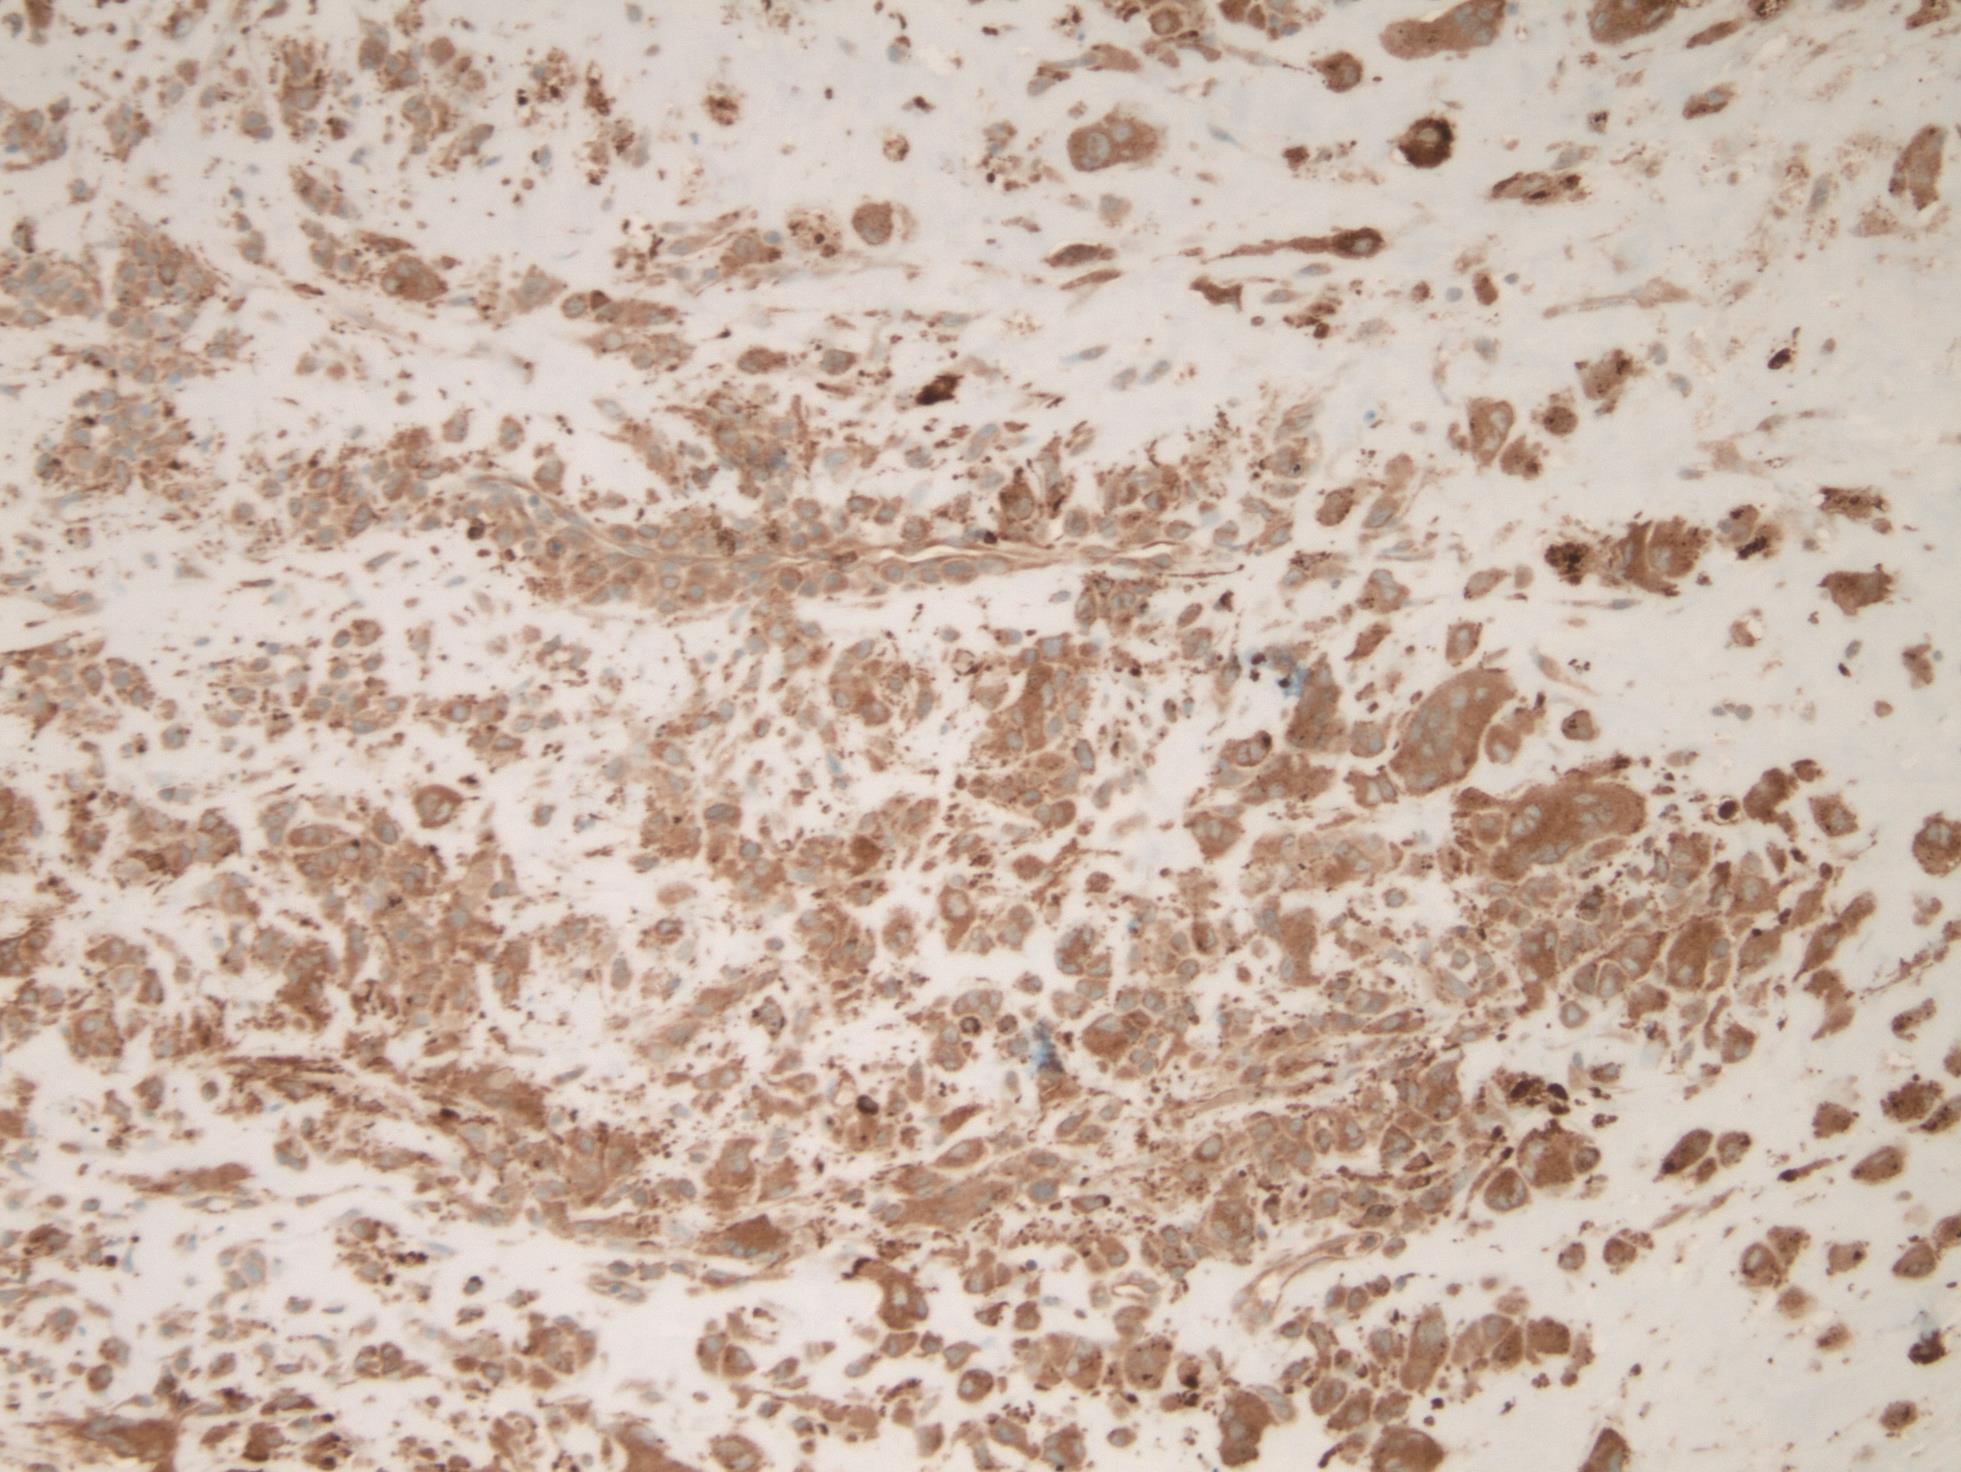 Immunohistochemical stain of CD 68.